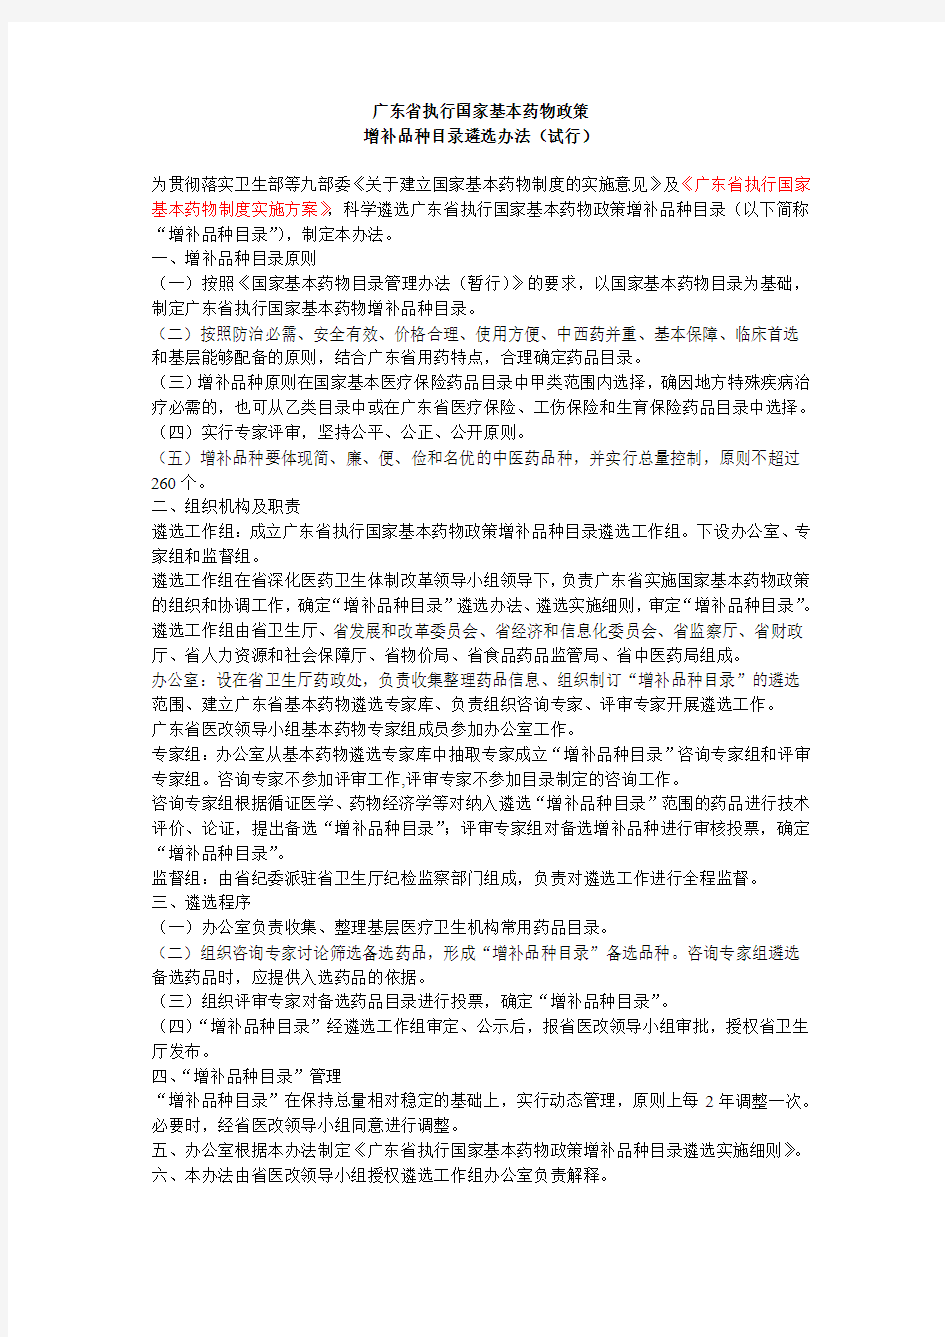 广东省执行国家基本药物政策增补品种目录遴选办法(试行)